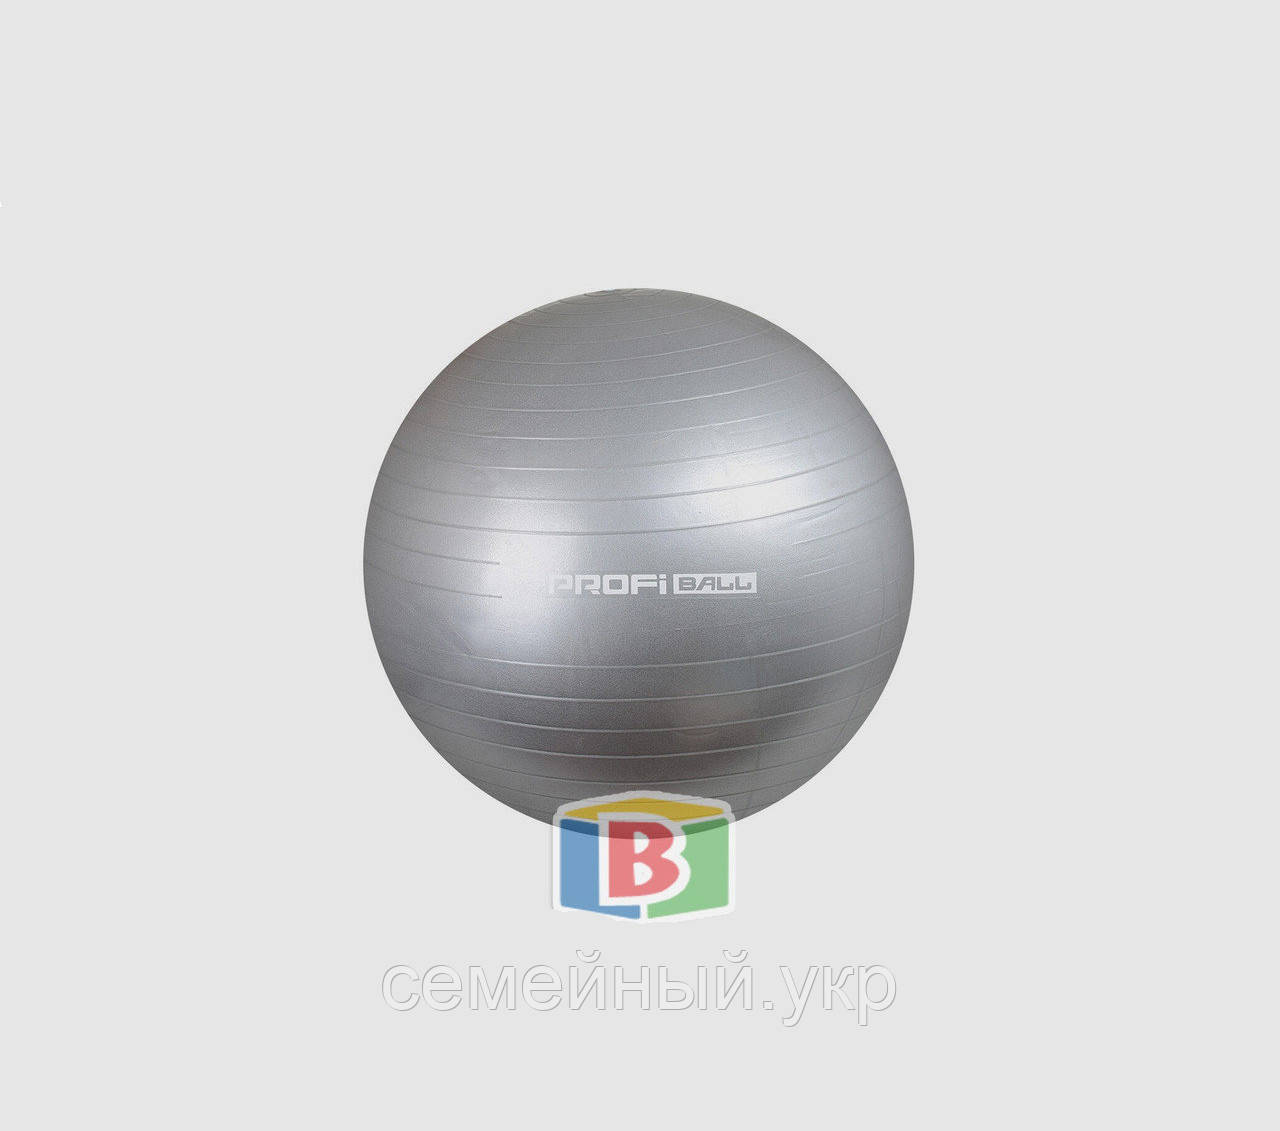 Гимнастический мяч для фитнеса. Цвет: серый. Диаметр: 75 см.